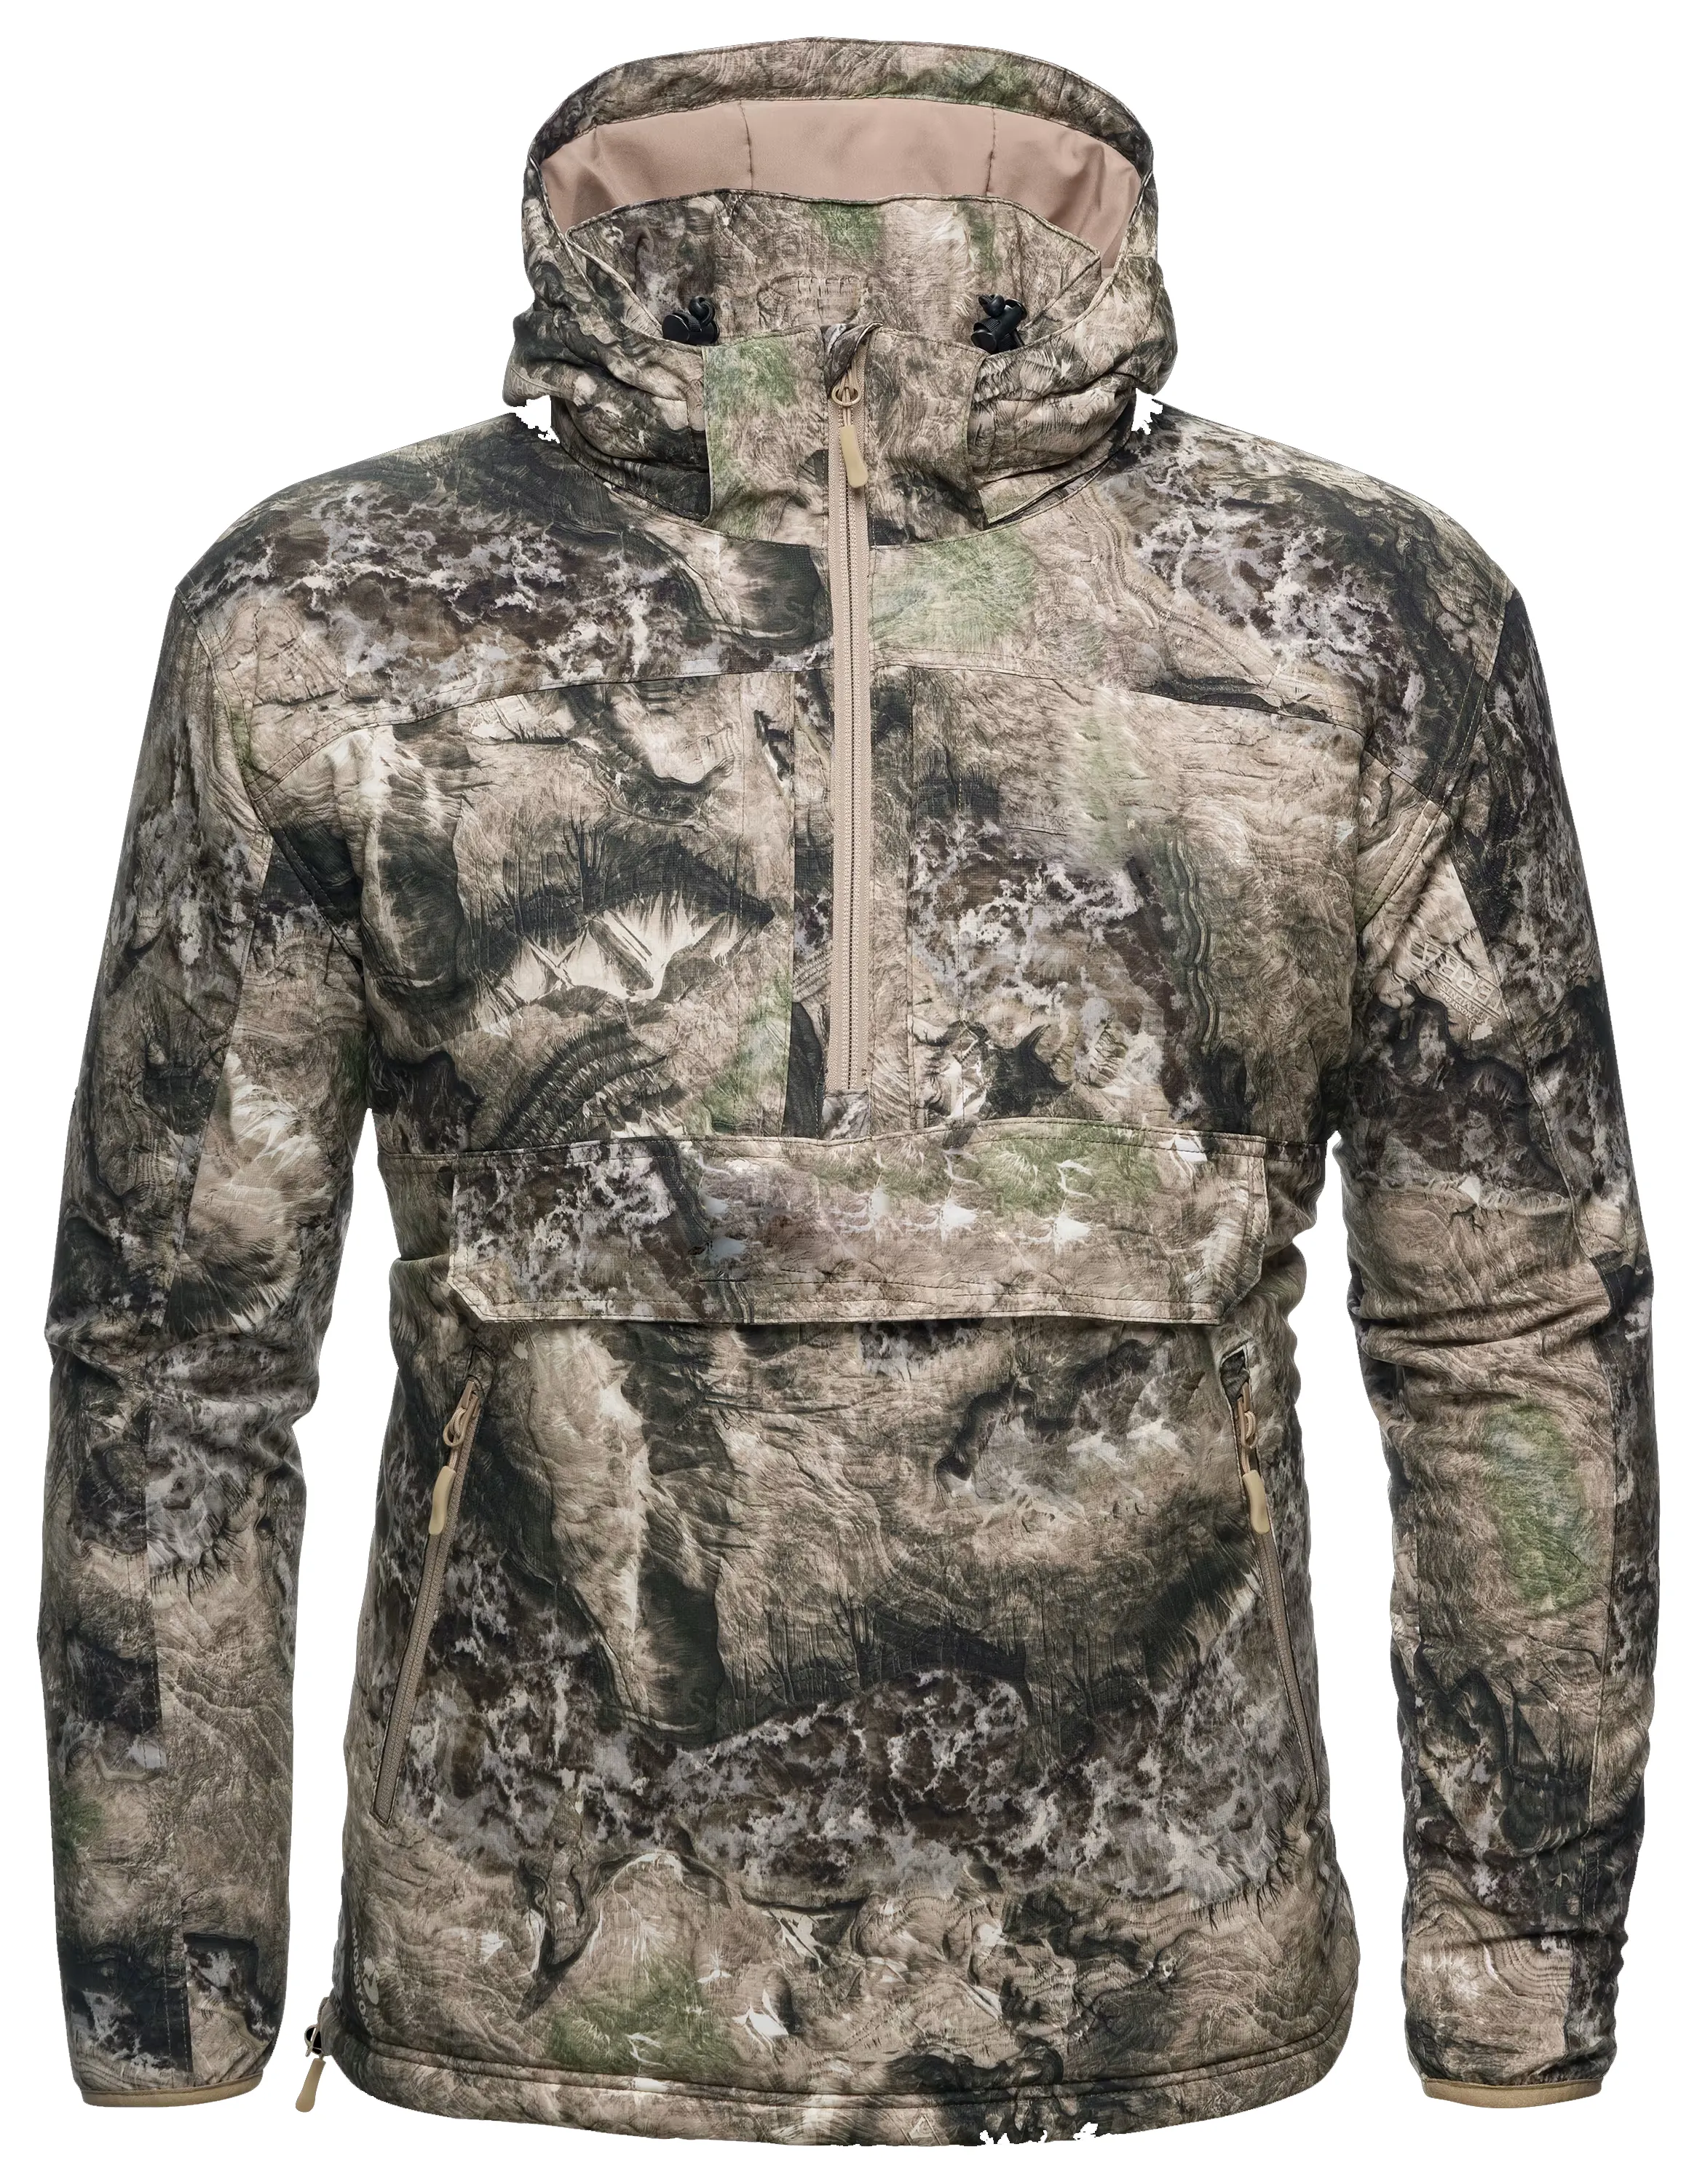 Outdoors Predator Jacket for Men hunting winter men wear clothes quiet waterproof hoodie jacket